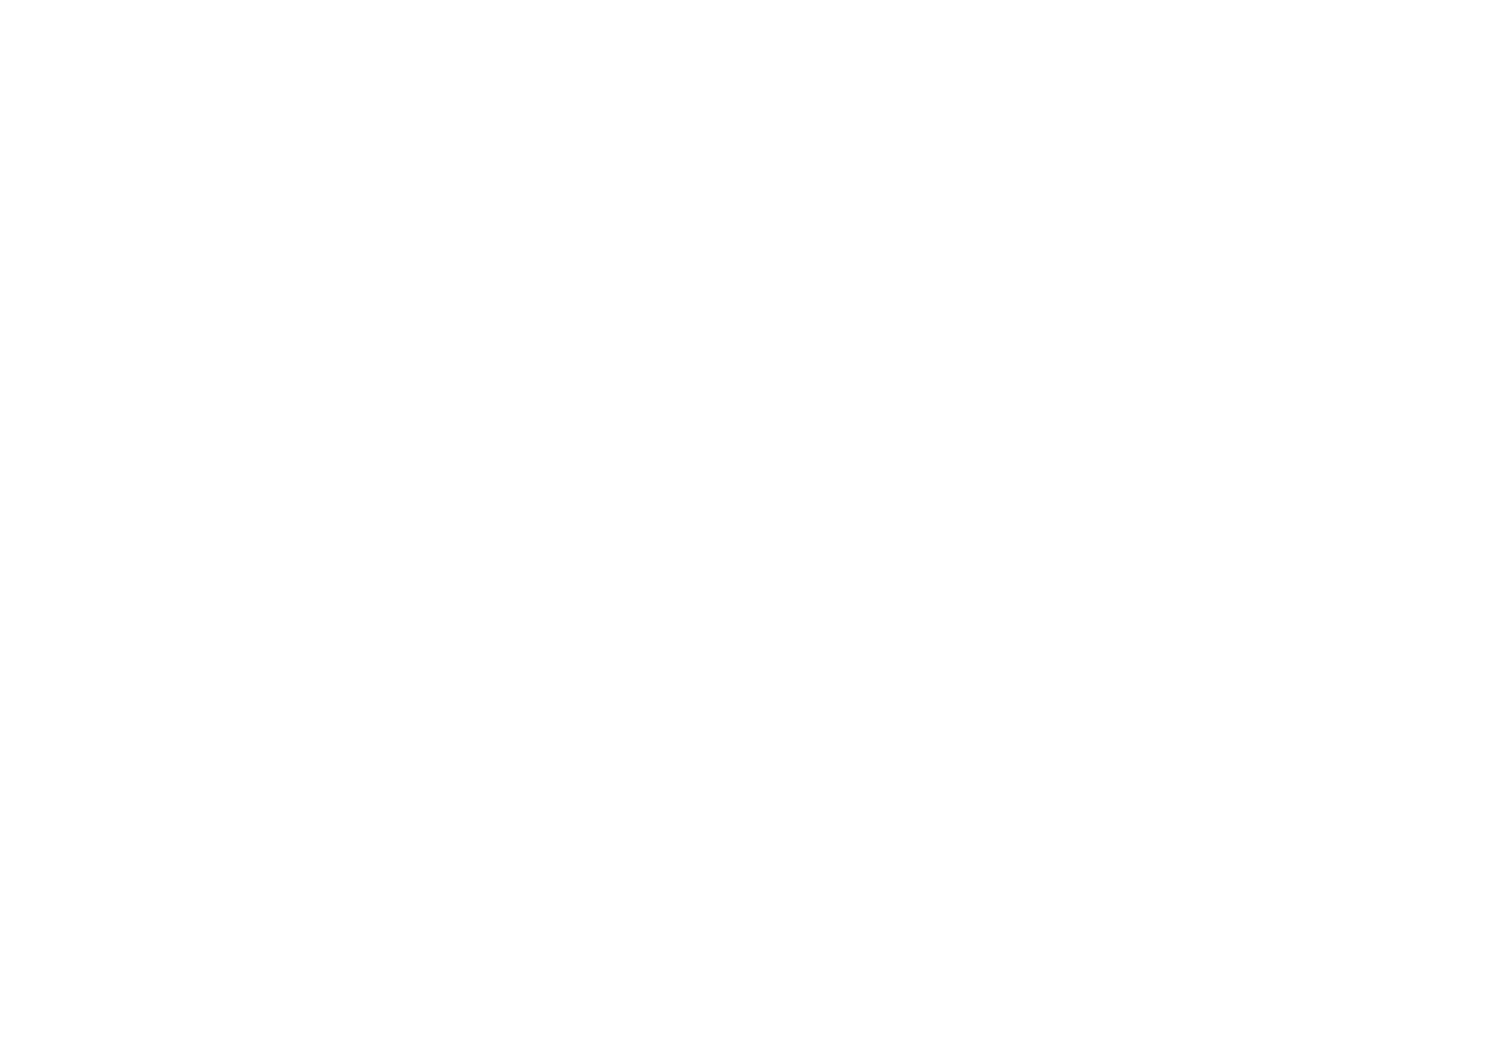 Michael Alvarado